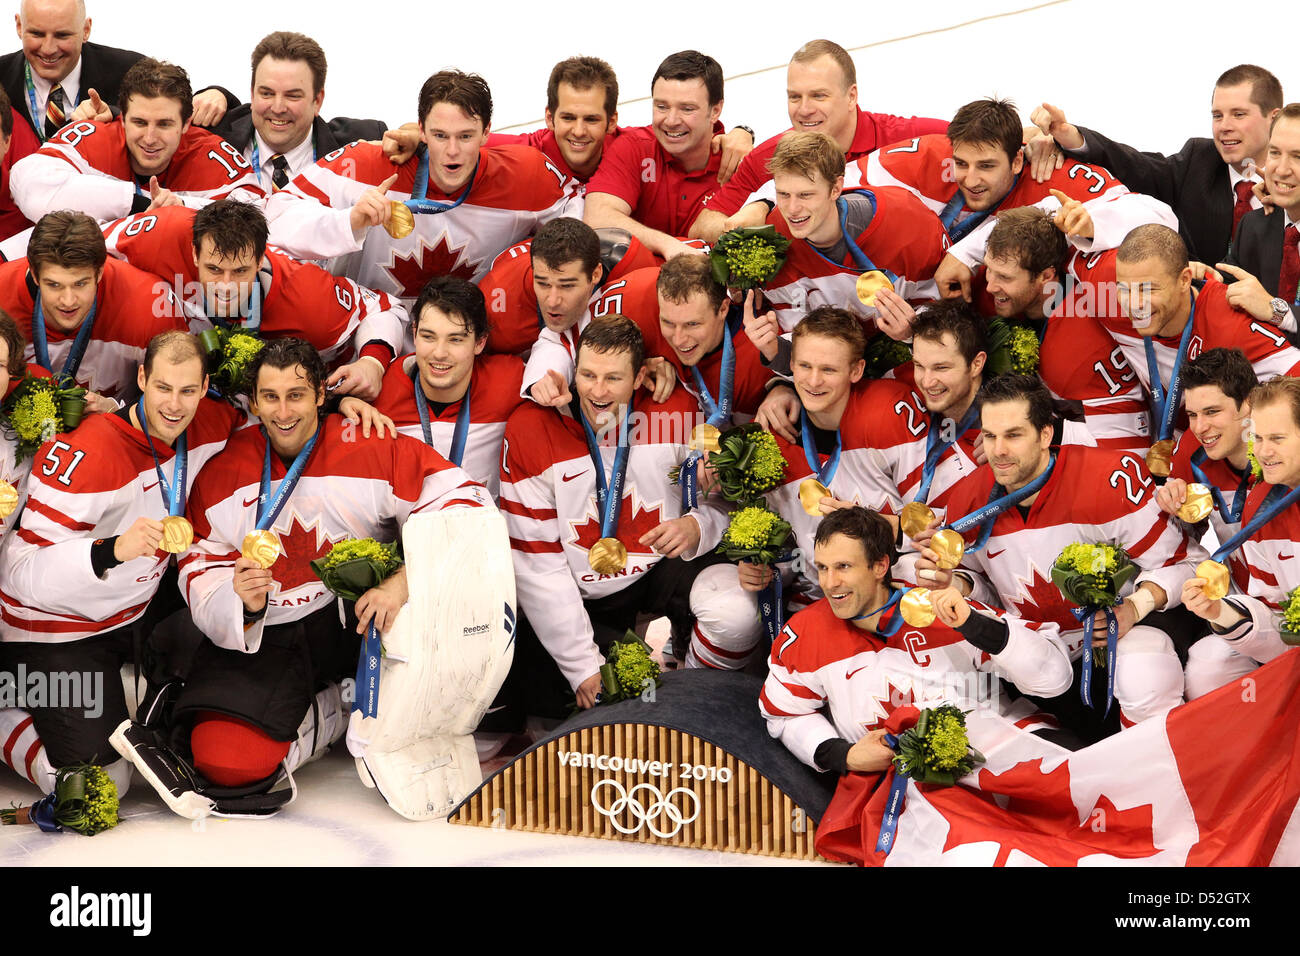 Il hockey canadese team gode la medaglia d'oro dopo l'Hockey su ghiaccio medaglia d oro gioco di Vancouver 2010 Giochi Olimpici Invernali in Canada Hockey Place, Vancouver, Canada, 28 febbraio 2010. Foto: Daniel Karmann +++(c) dpa - Bildfunk+++ Foto Stock